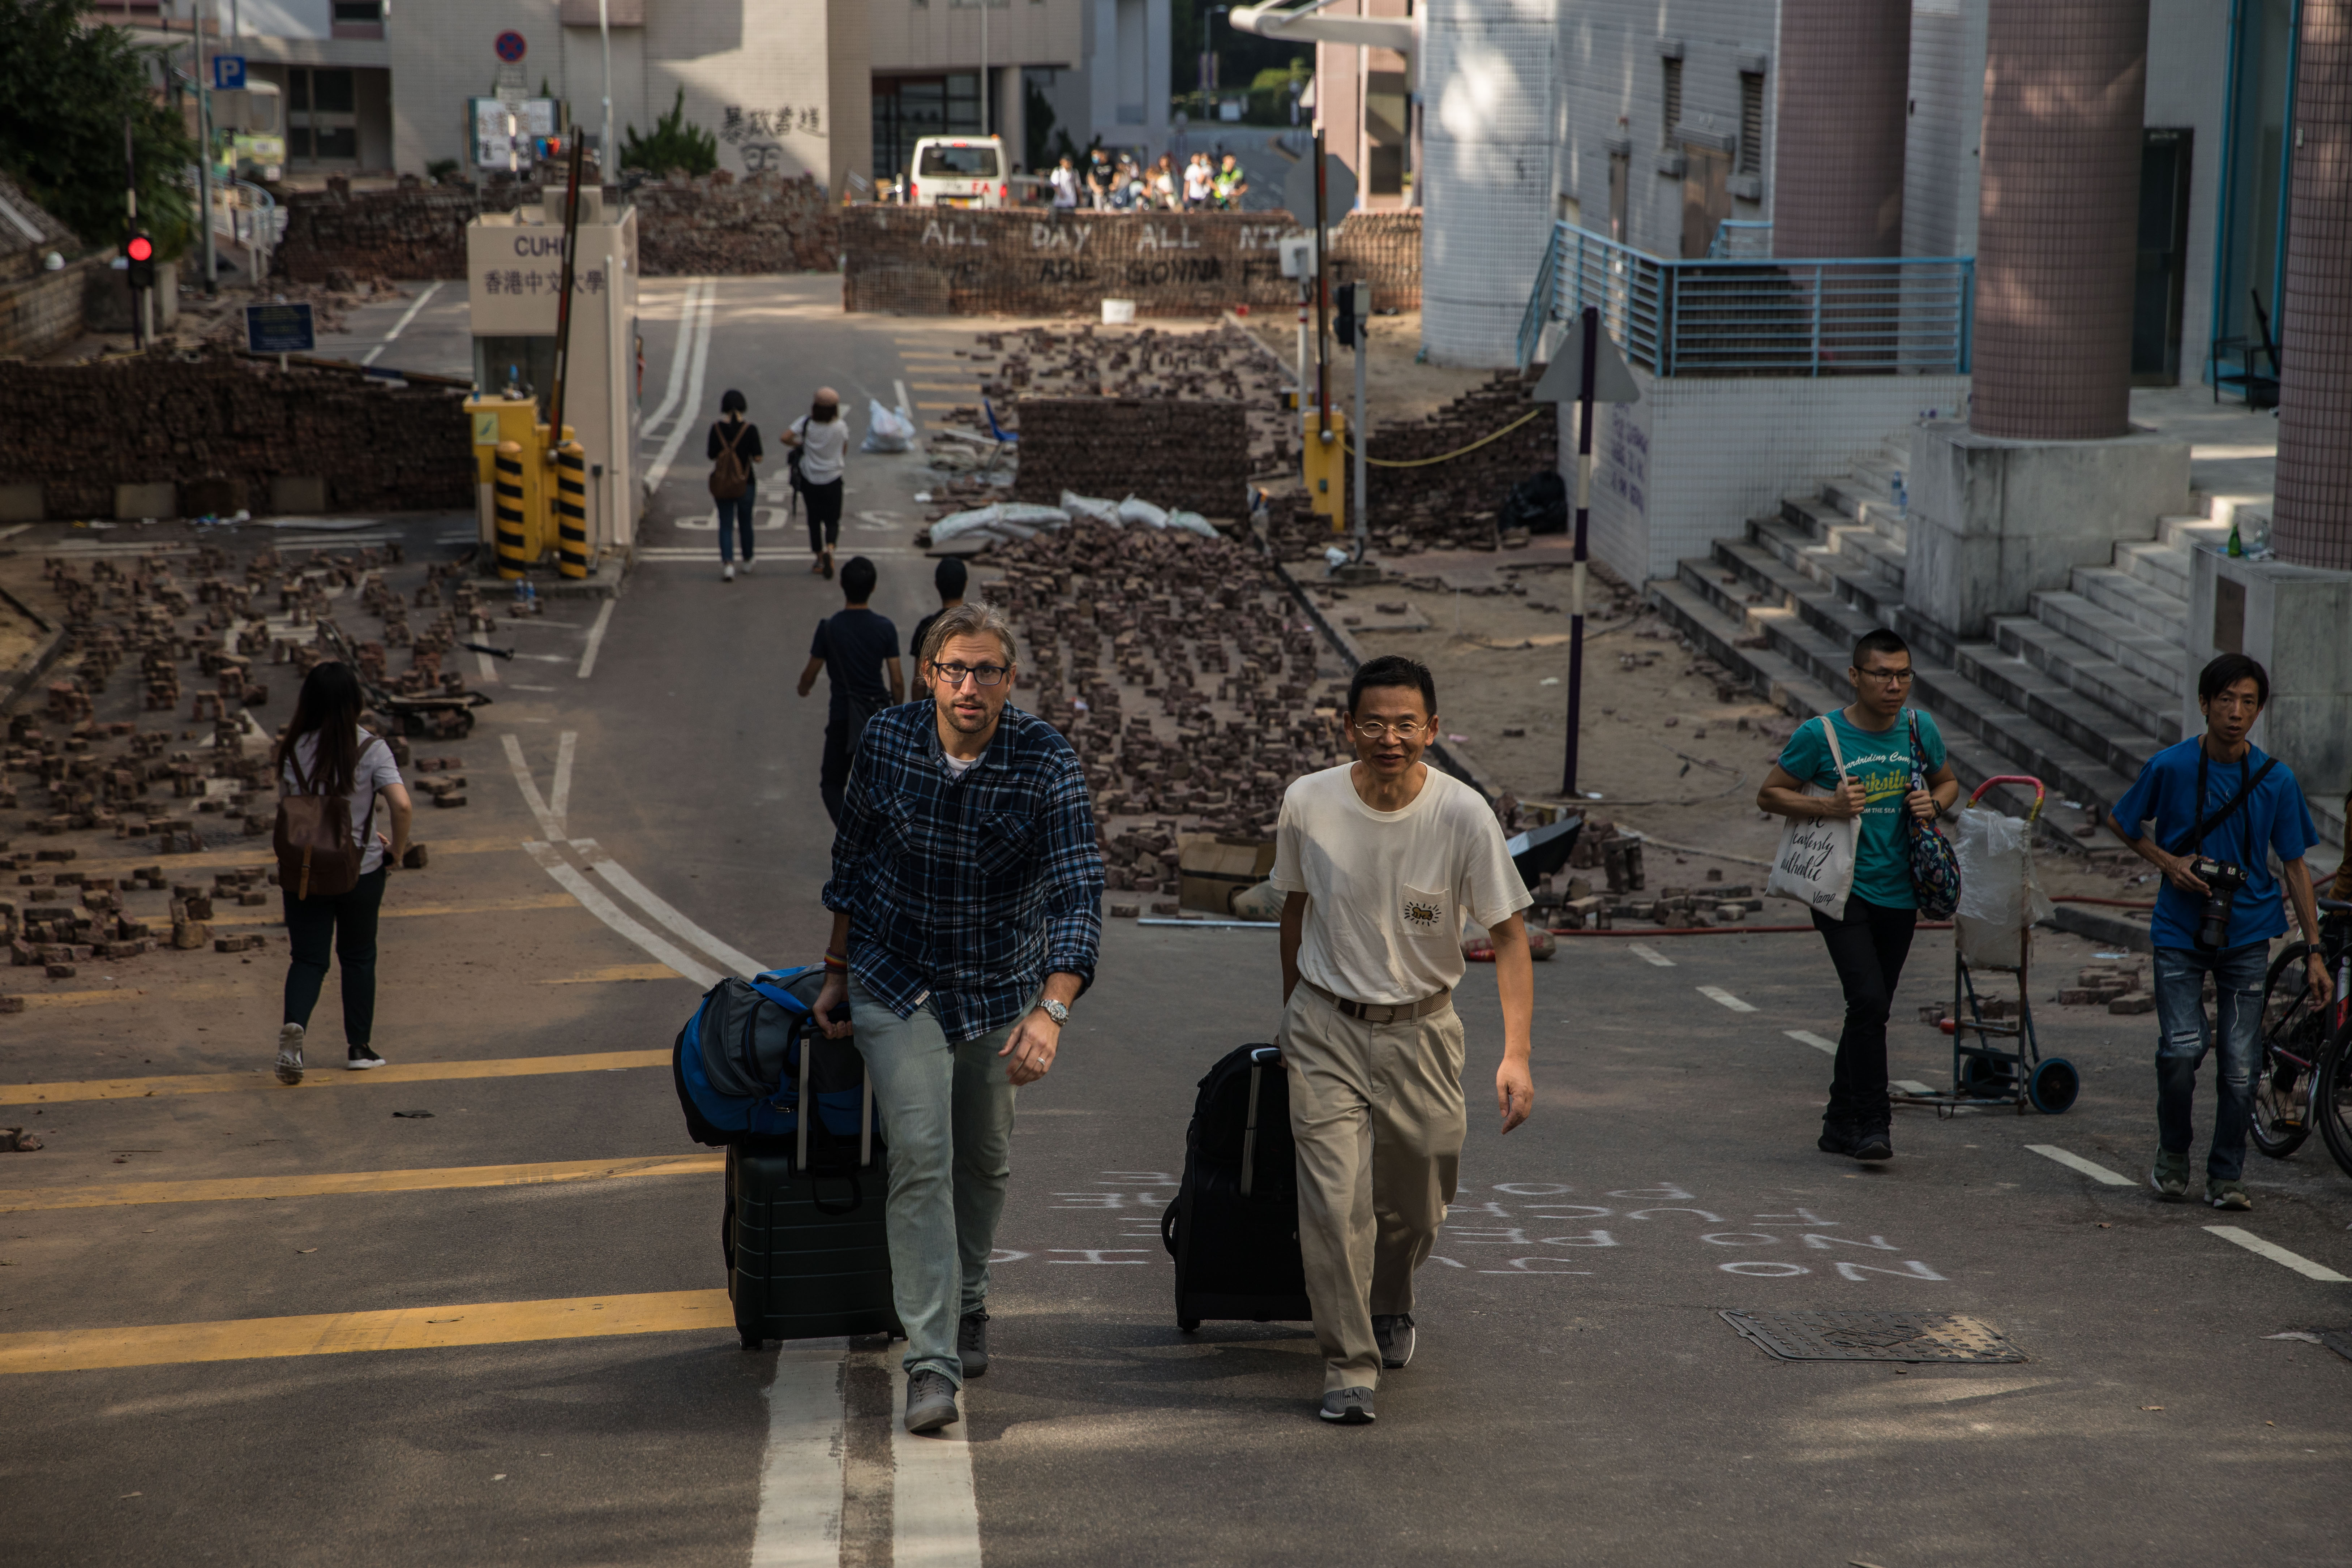 Sokan - főleg kínaiak és koreaiak - inkább elhagyják a várost.